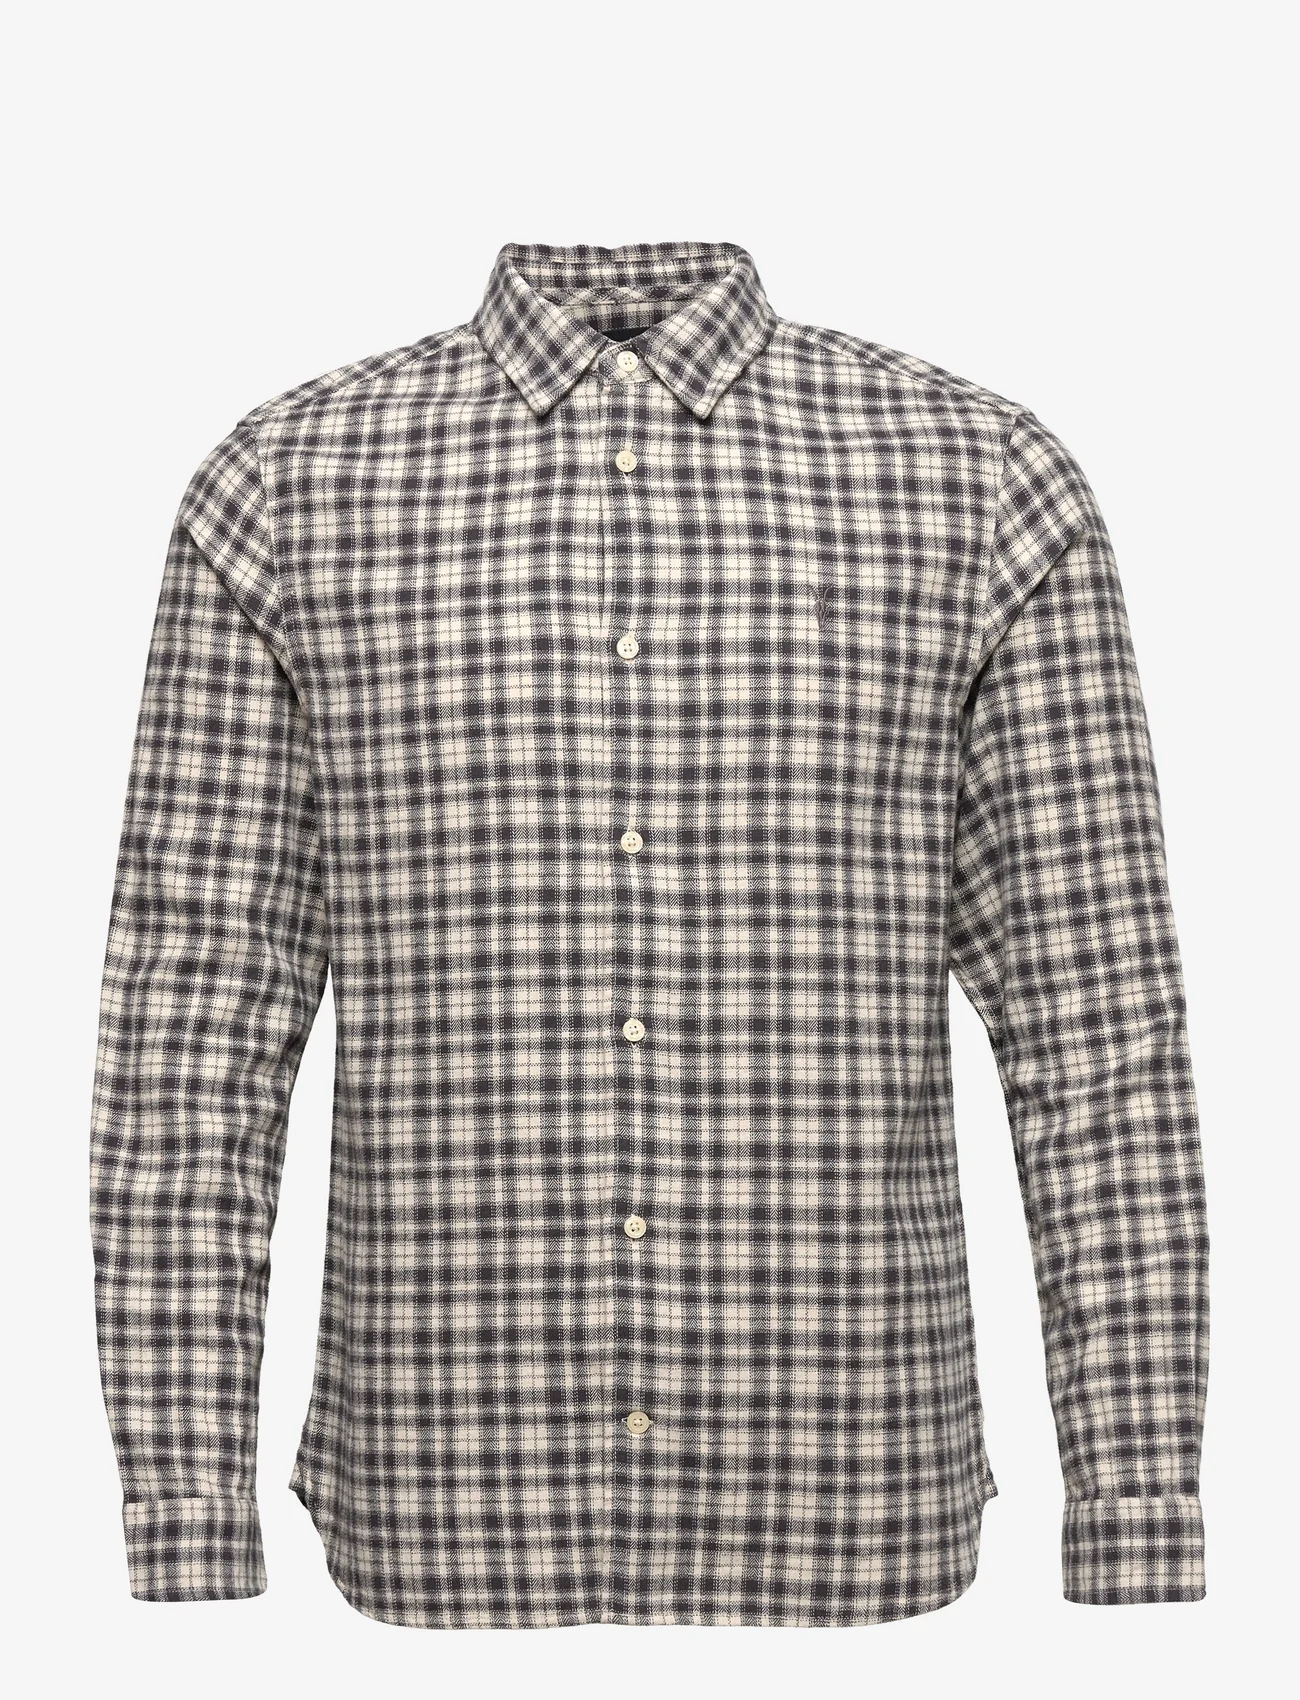 AllSaints - LEXINGTON LS SHIRT - rutiga skjortor - ecru - 0